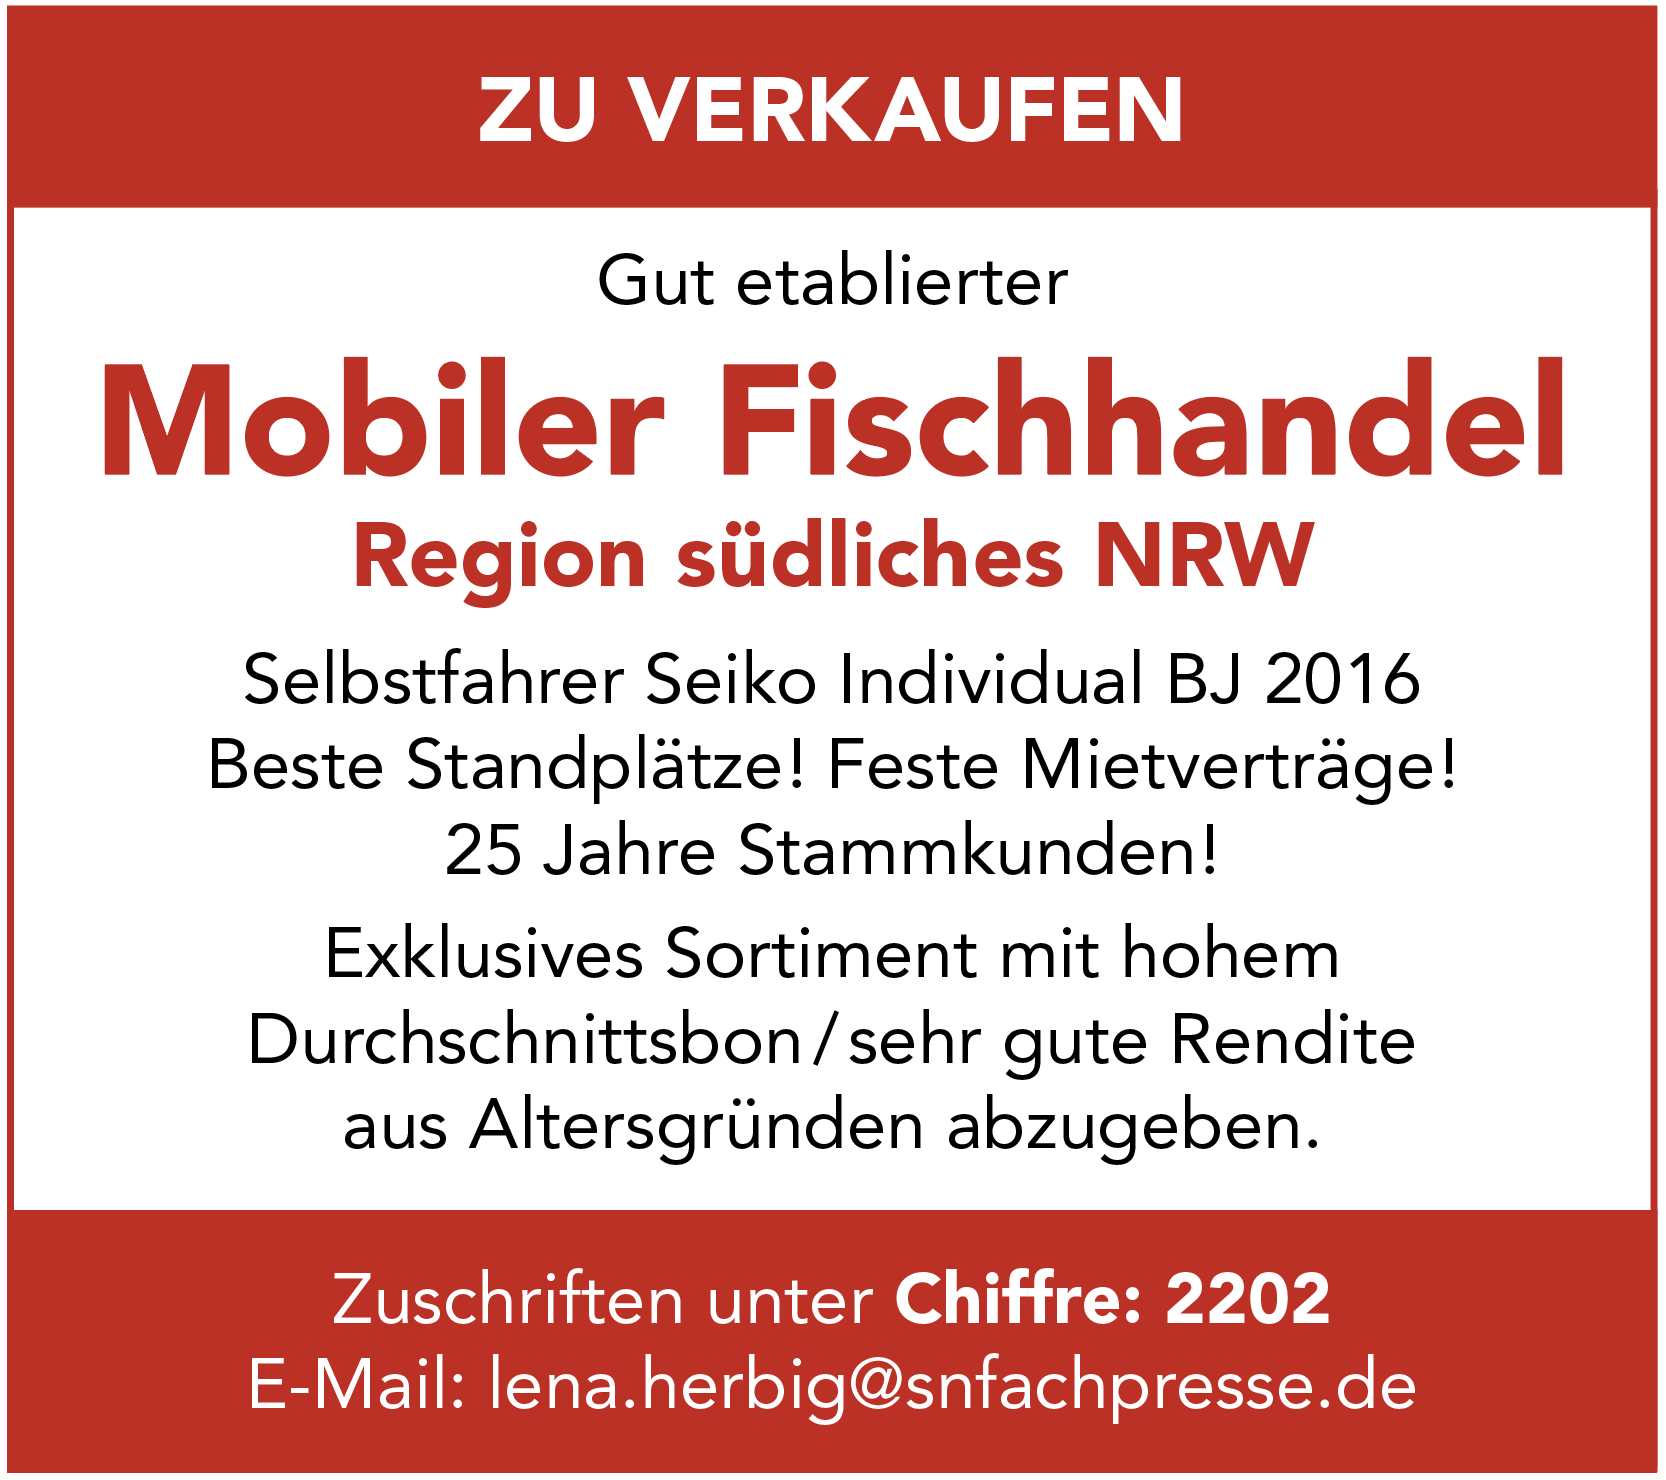 Mobiler Fischhandel in NRW